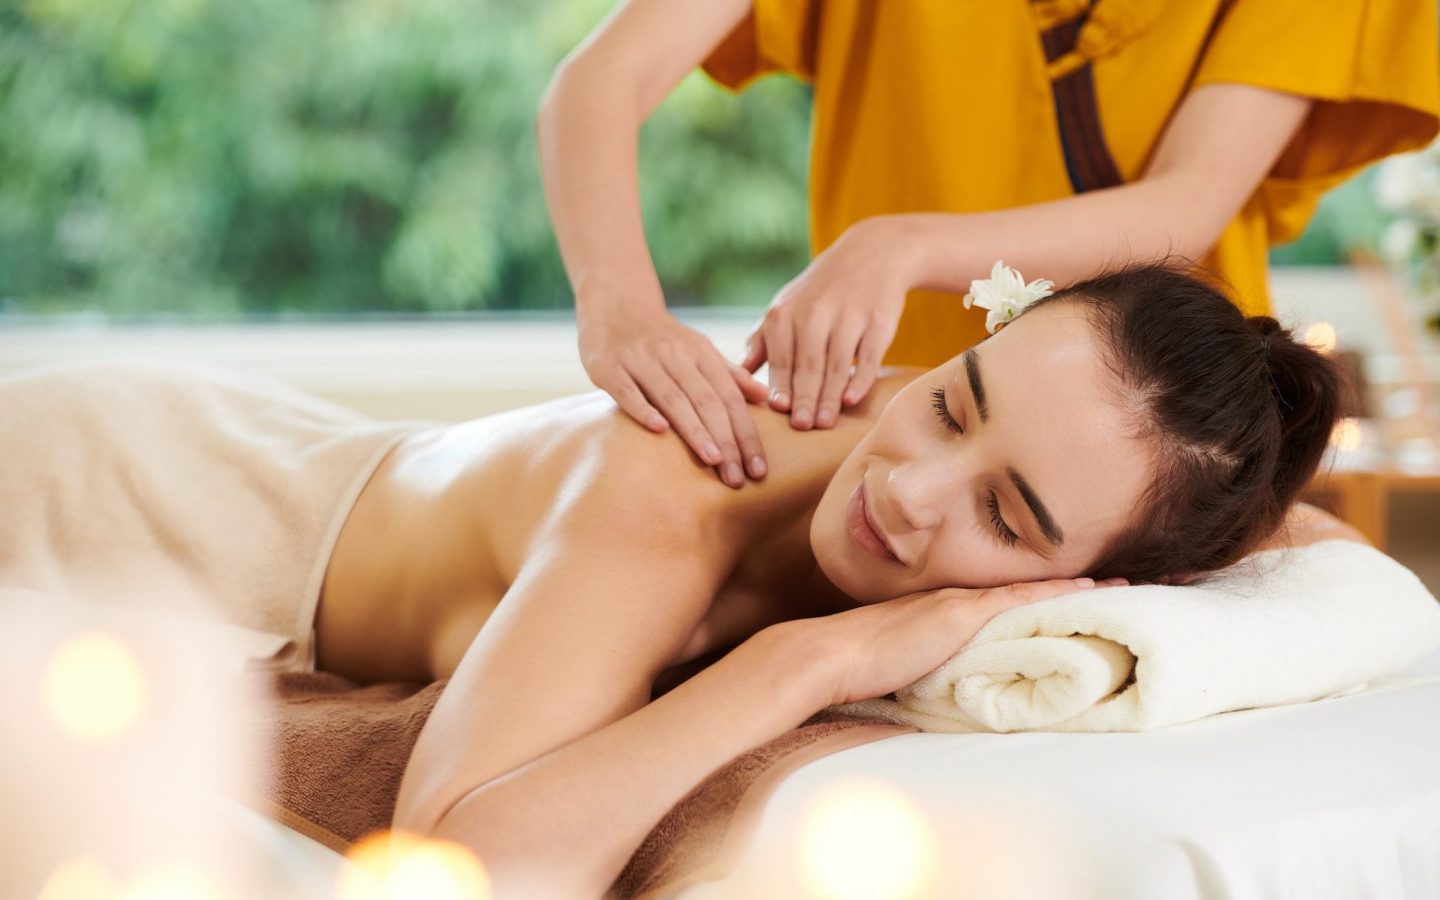 Spa massage in spa salon